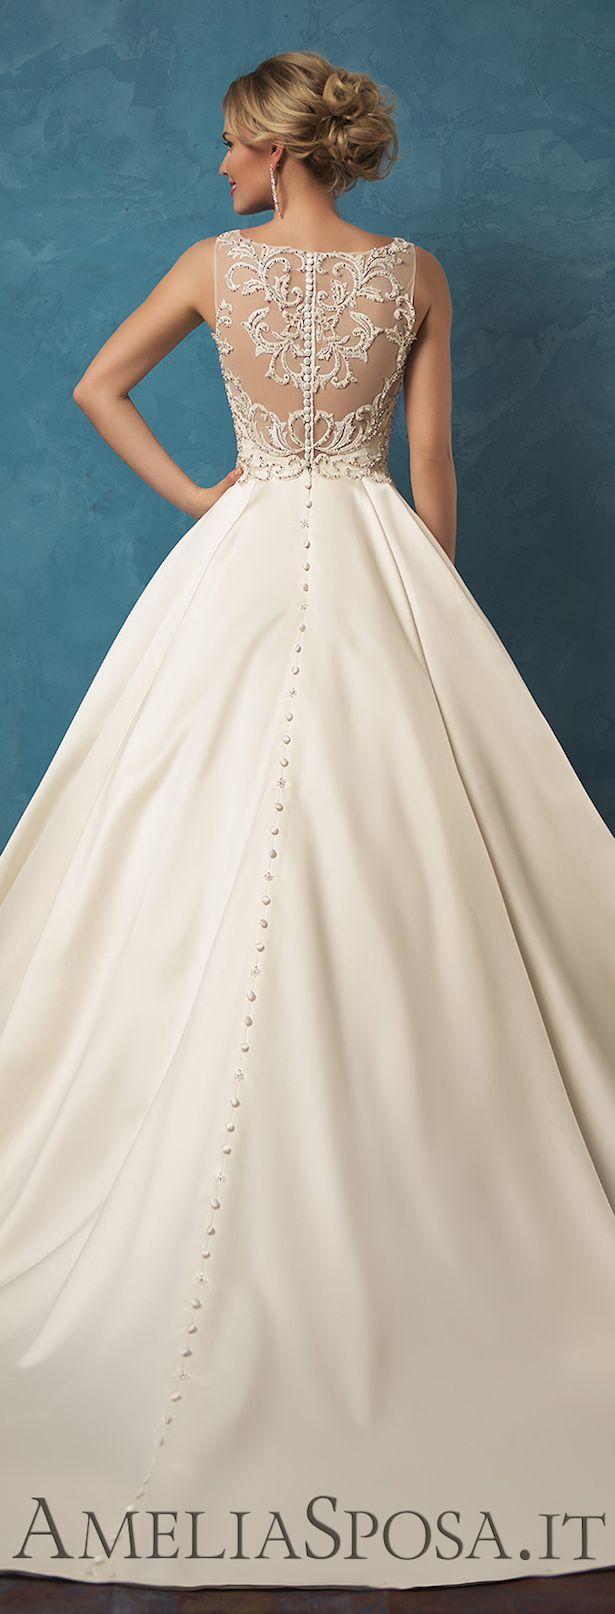 زفاف - Amelia Sposa 2017 Wedding Dresses